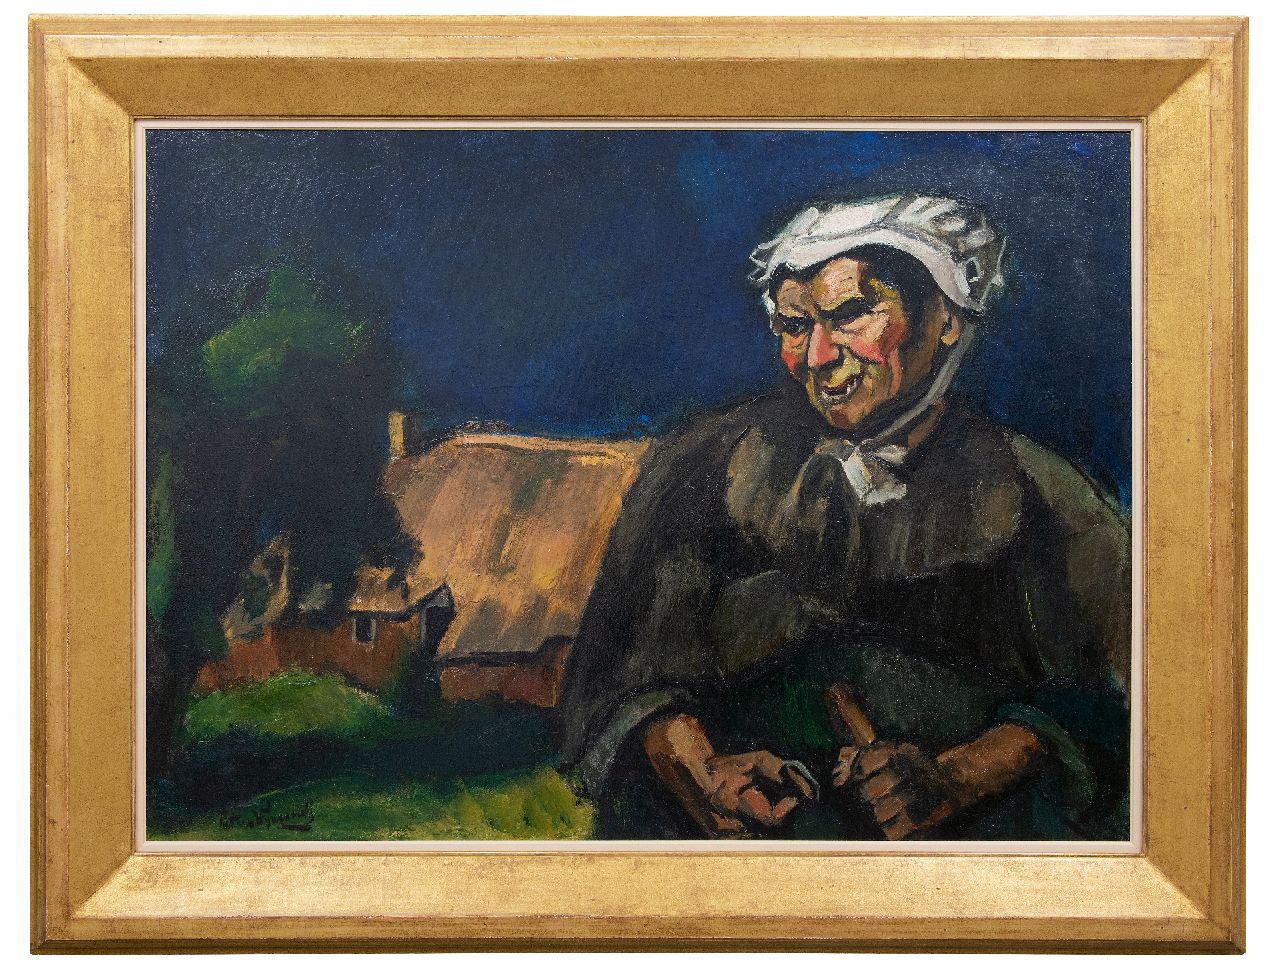 Wijngaerdt P.T. van | Petrus Theodorus 'Piet' van Wijngaerdt | Schilderijen te koop aangeboden | Brabantse boerin (Heeze), olieverf op doek 88,0 x 120,0 cm, gesigneerd linksonder